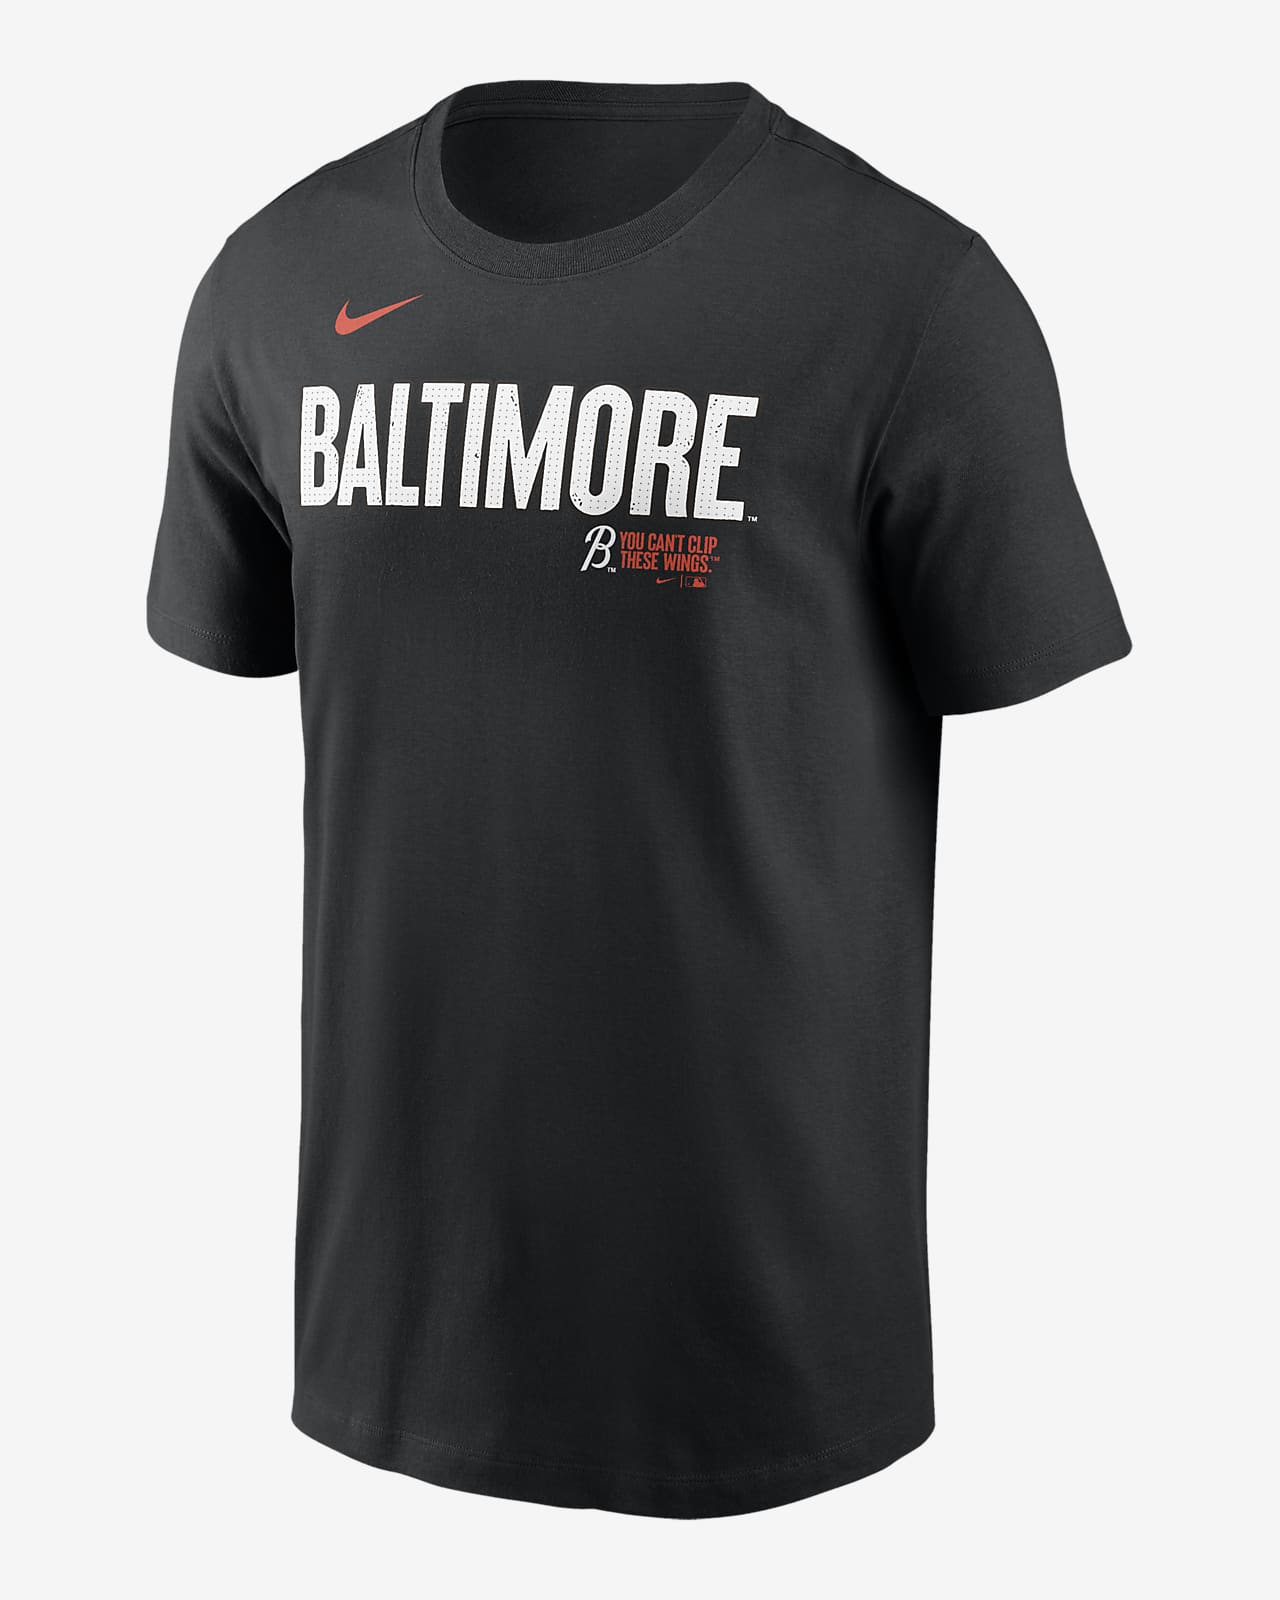 Playera Nike de la MLB para hombre Baltimore Orioles City Connect Wordmark